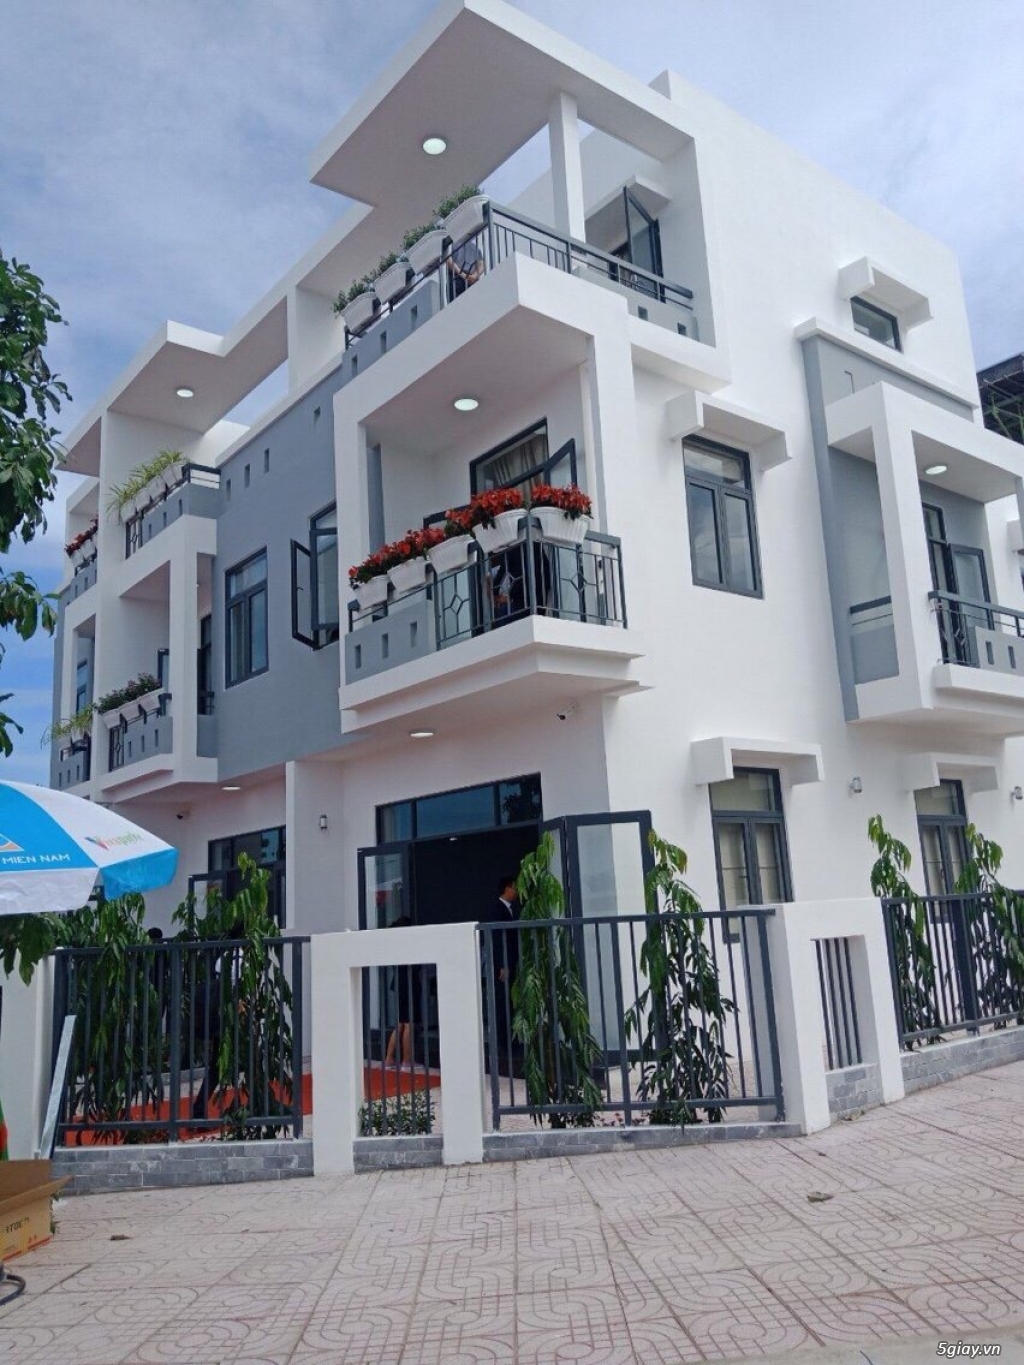 Cần bán gấp nhà mới xây 1 trệt 2 lầu ở Đồng Nai liên hệ:0898 417 390 - 4